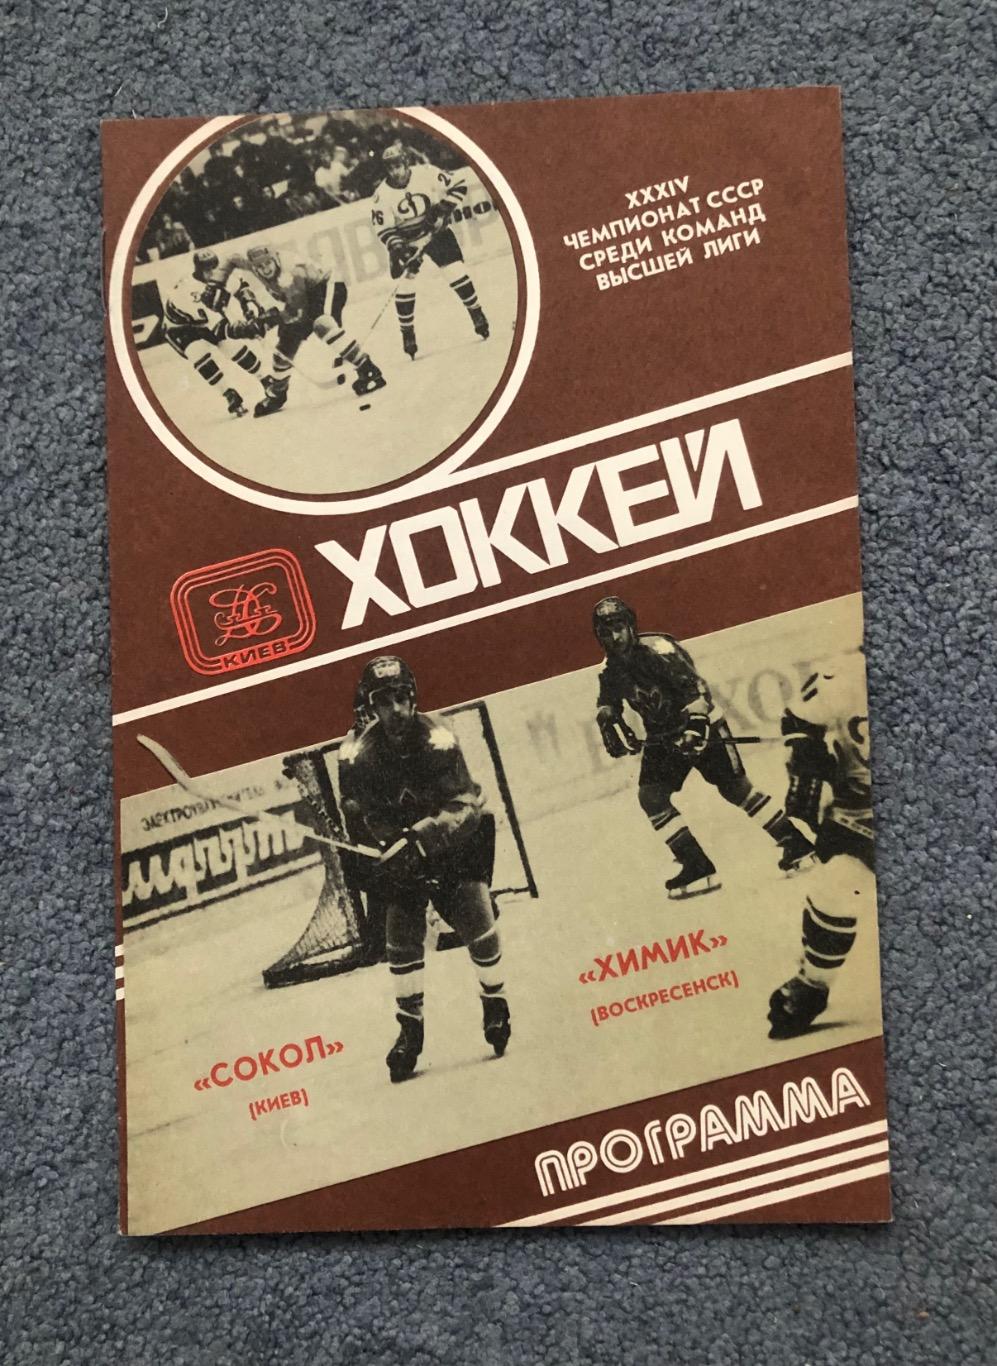 Сокол Киев - Химик Воскресенск, 02.04.1980